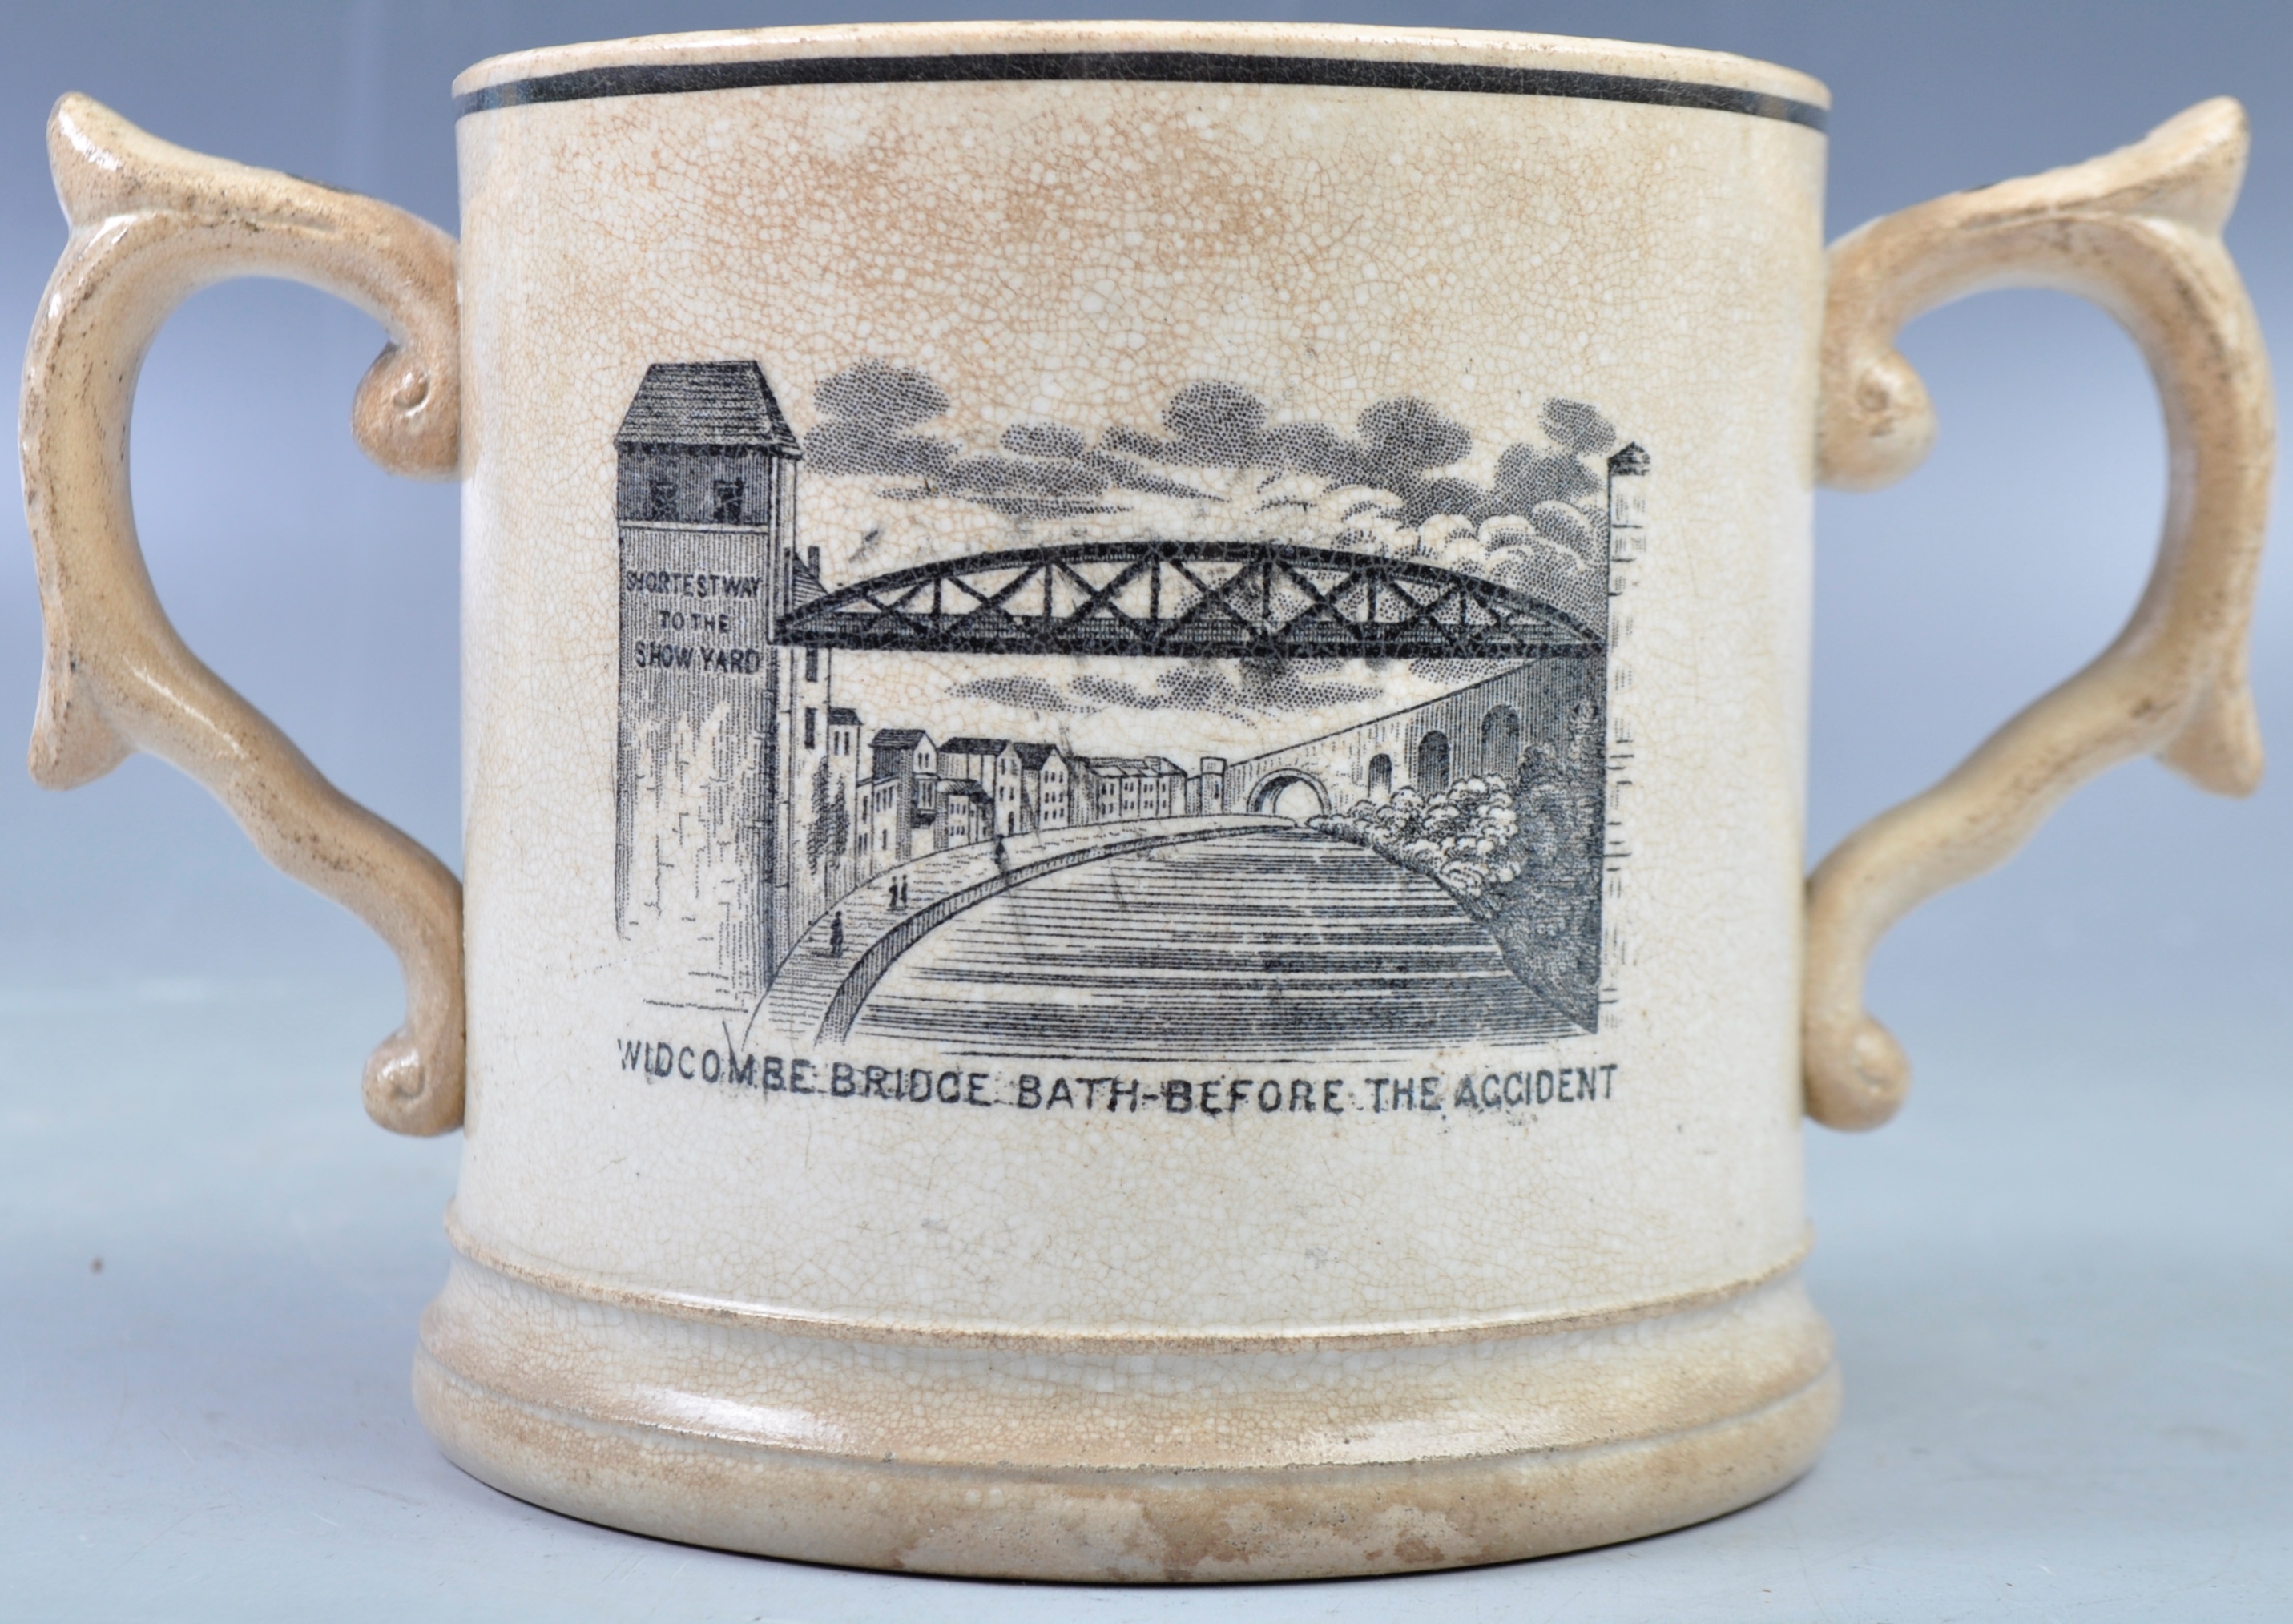 RARE 19TH CENTURY WIDCOMBE BRIDGE DISASTER TANKARD - Image 2 of 4